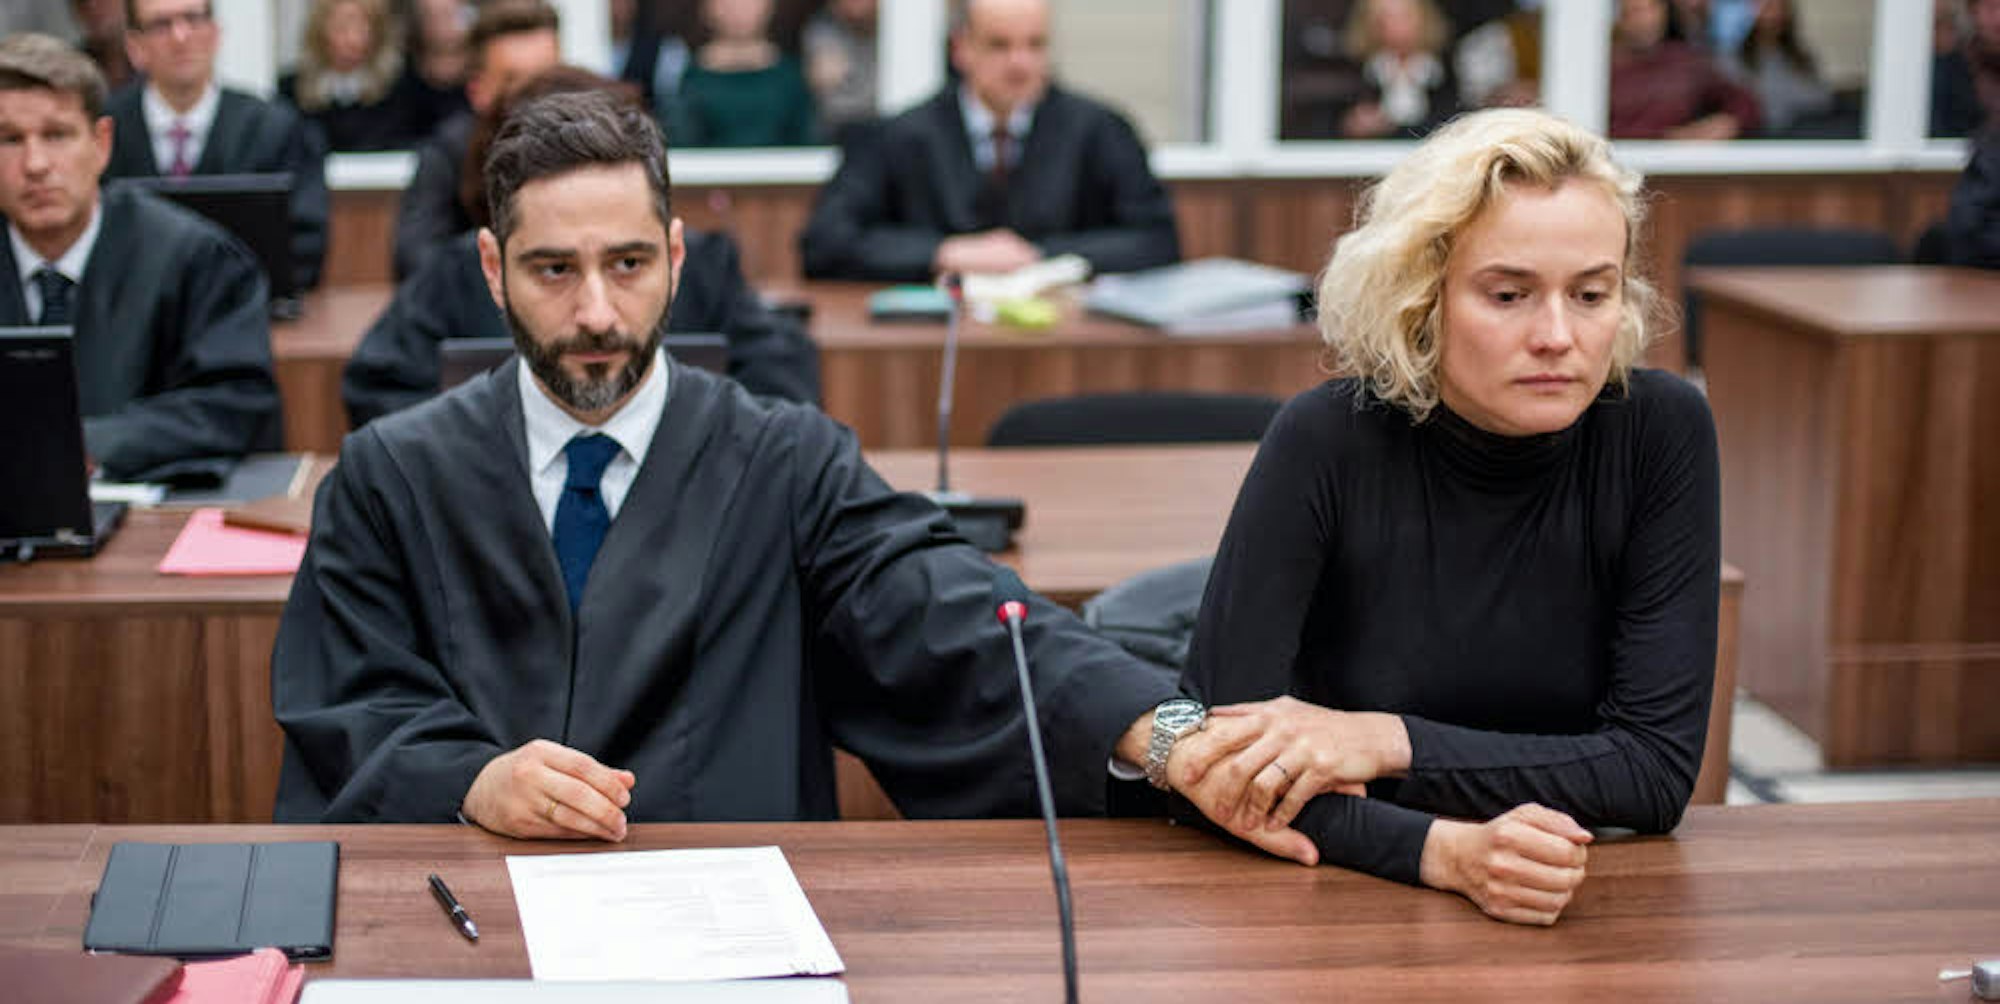 Moschitto spielt im Film den Freund und Anwalt der Frau, die ihre Familie verloren hat.